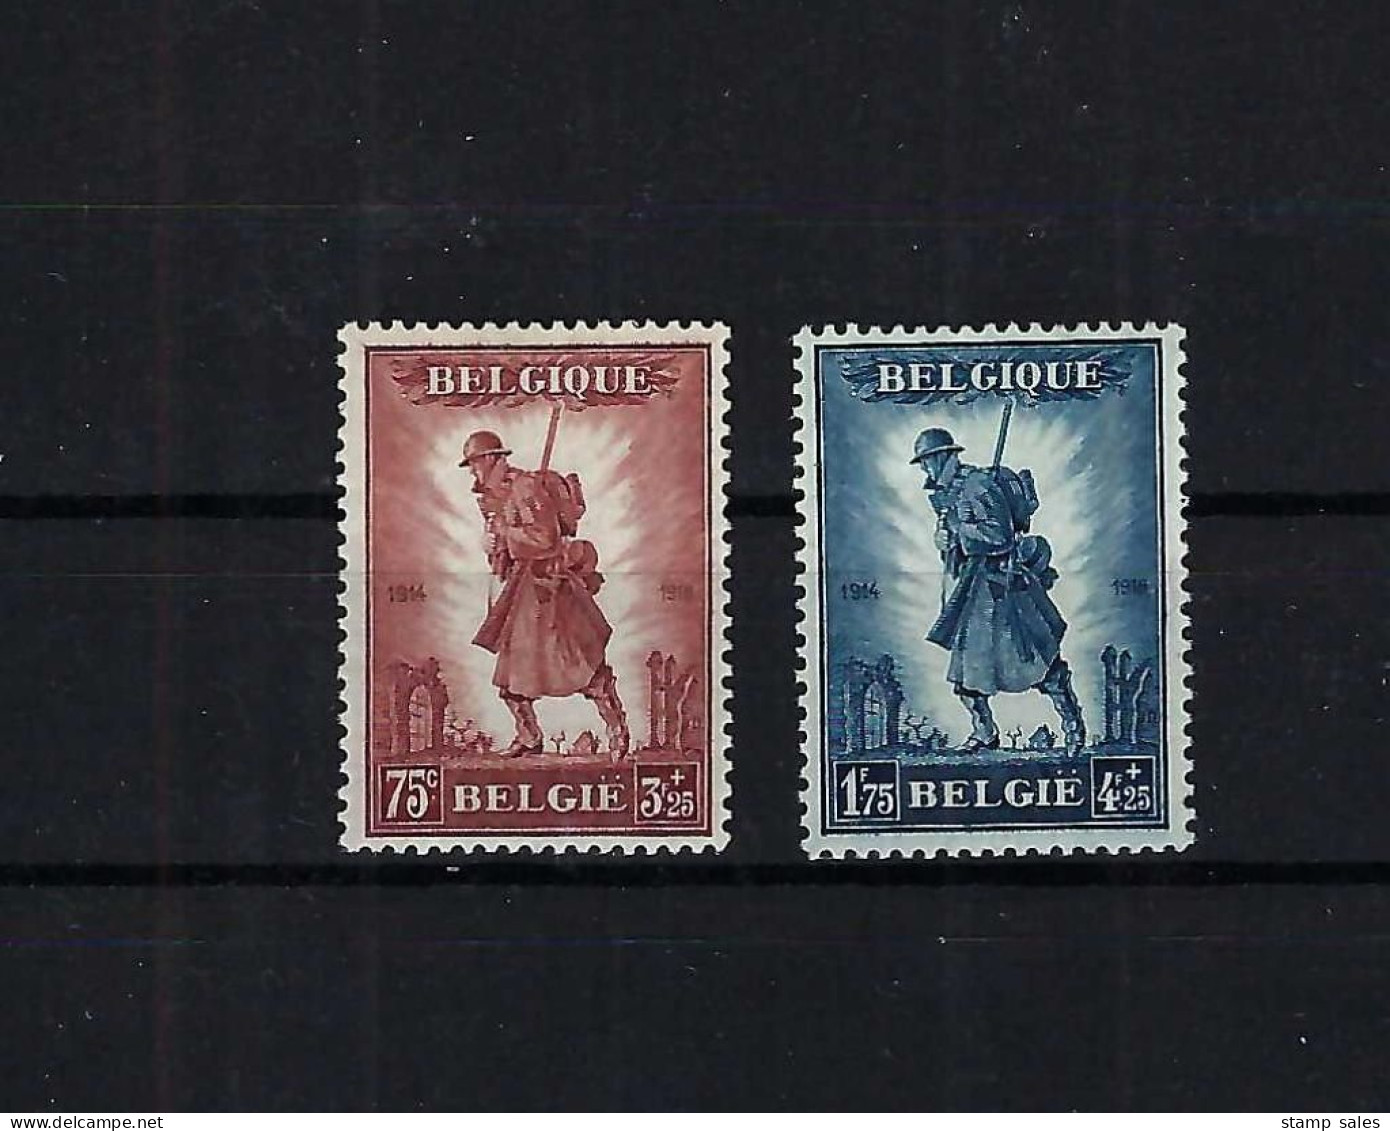 België N°351/352 Infanterie 1932 MNH ** COB € 440,00 SUPERB - Unused Stamps